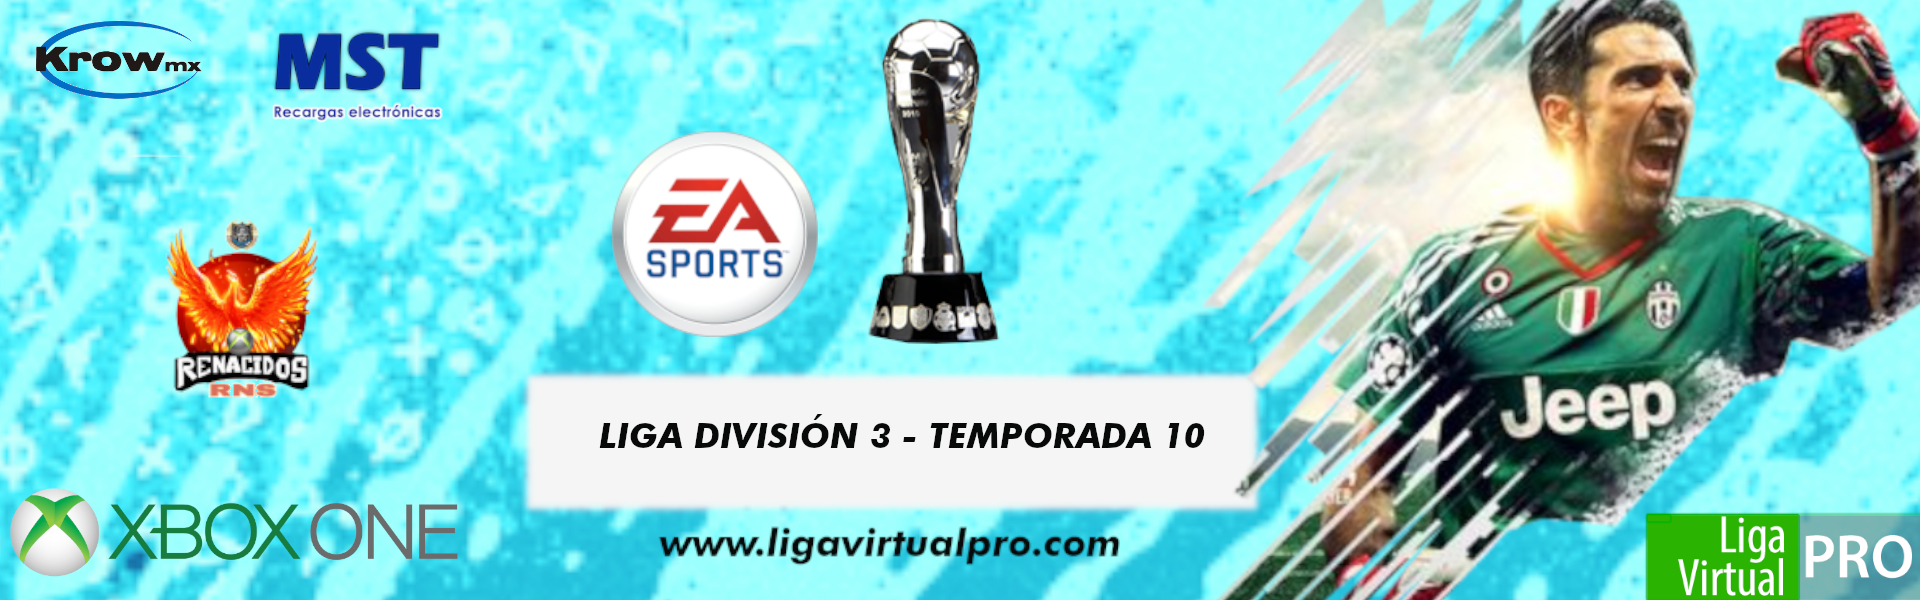 Logo-LIGA DIVISION 3 - TEMPORADA 10